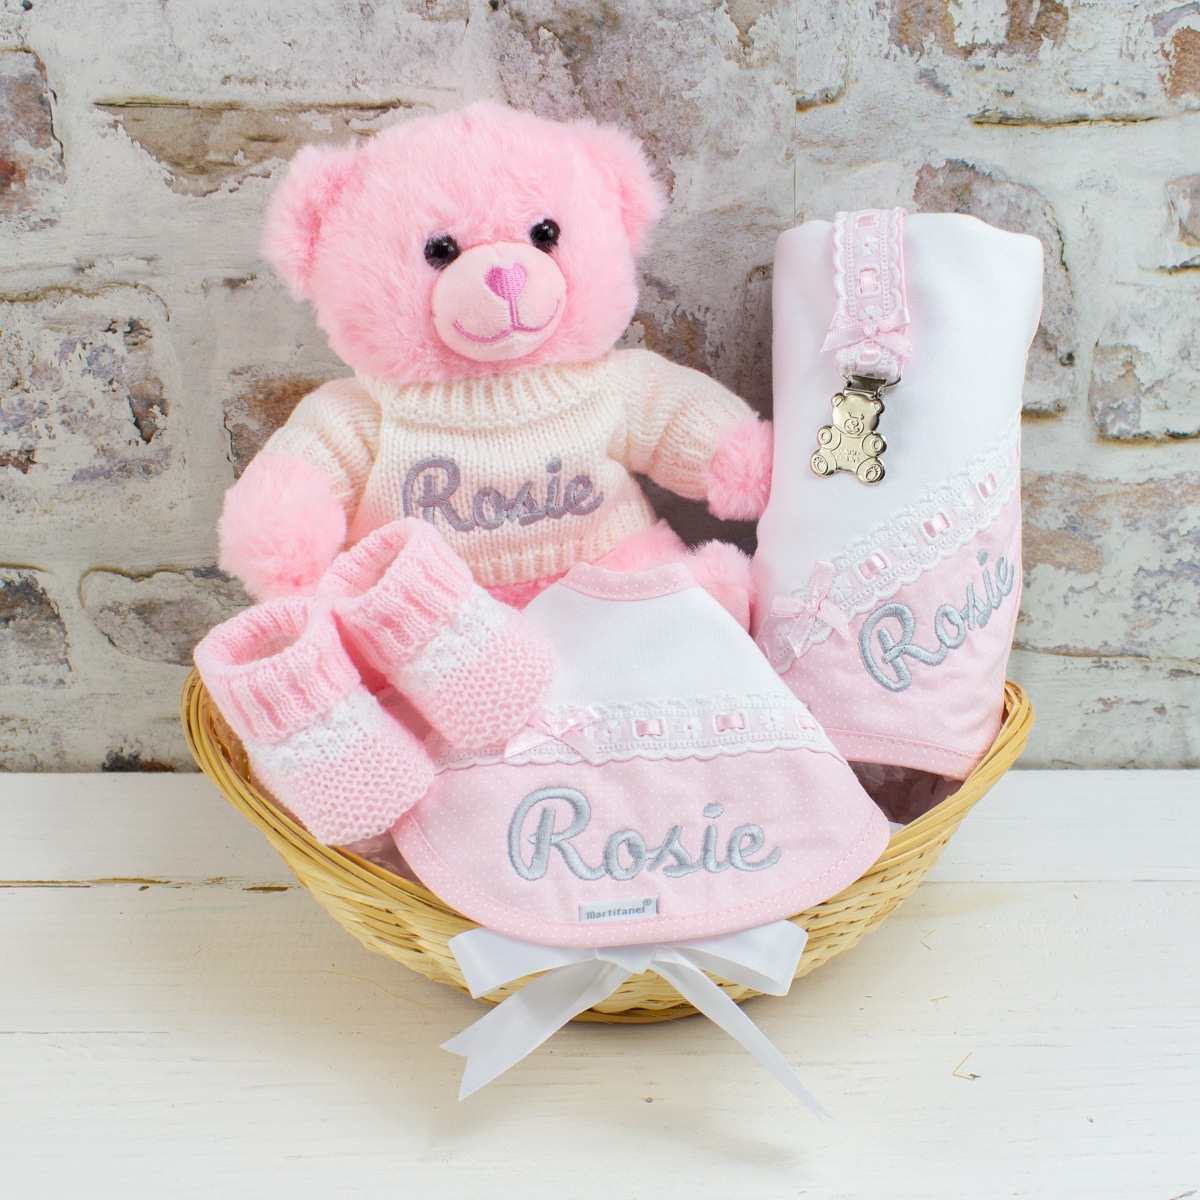 Personalised Pink \u0026#39;Sweet Baby\u0026#39; Gift Hamper - Heavensent Baby Gifts